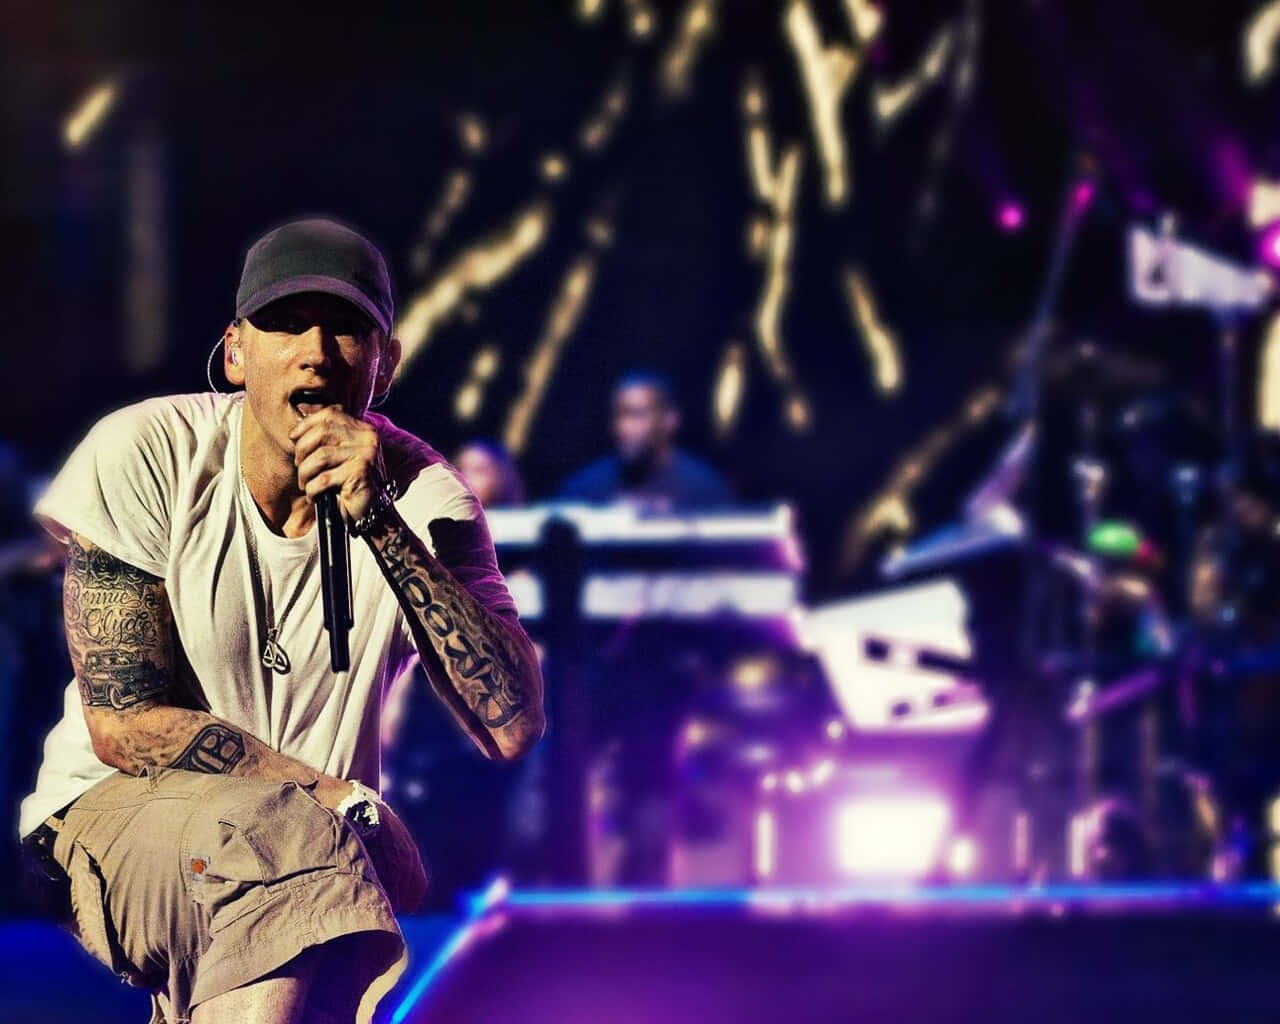 Eminembakgrund I 1280 X 1024-upplösning.